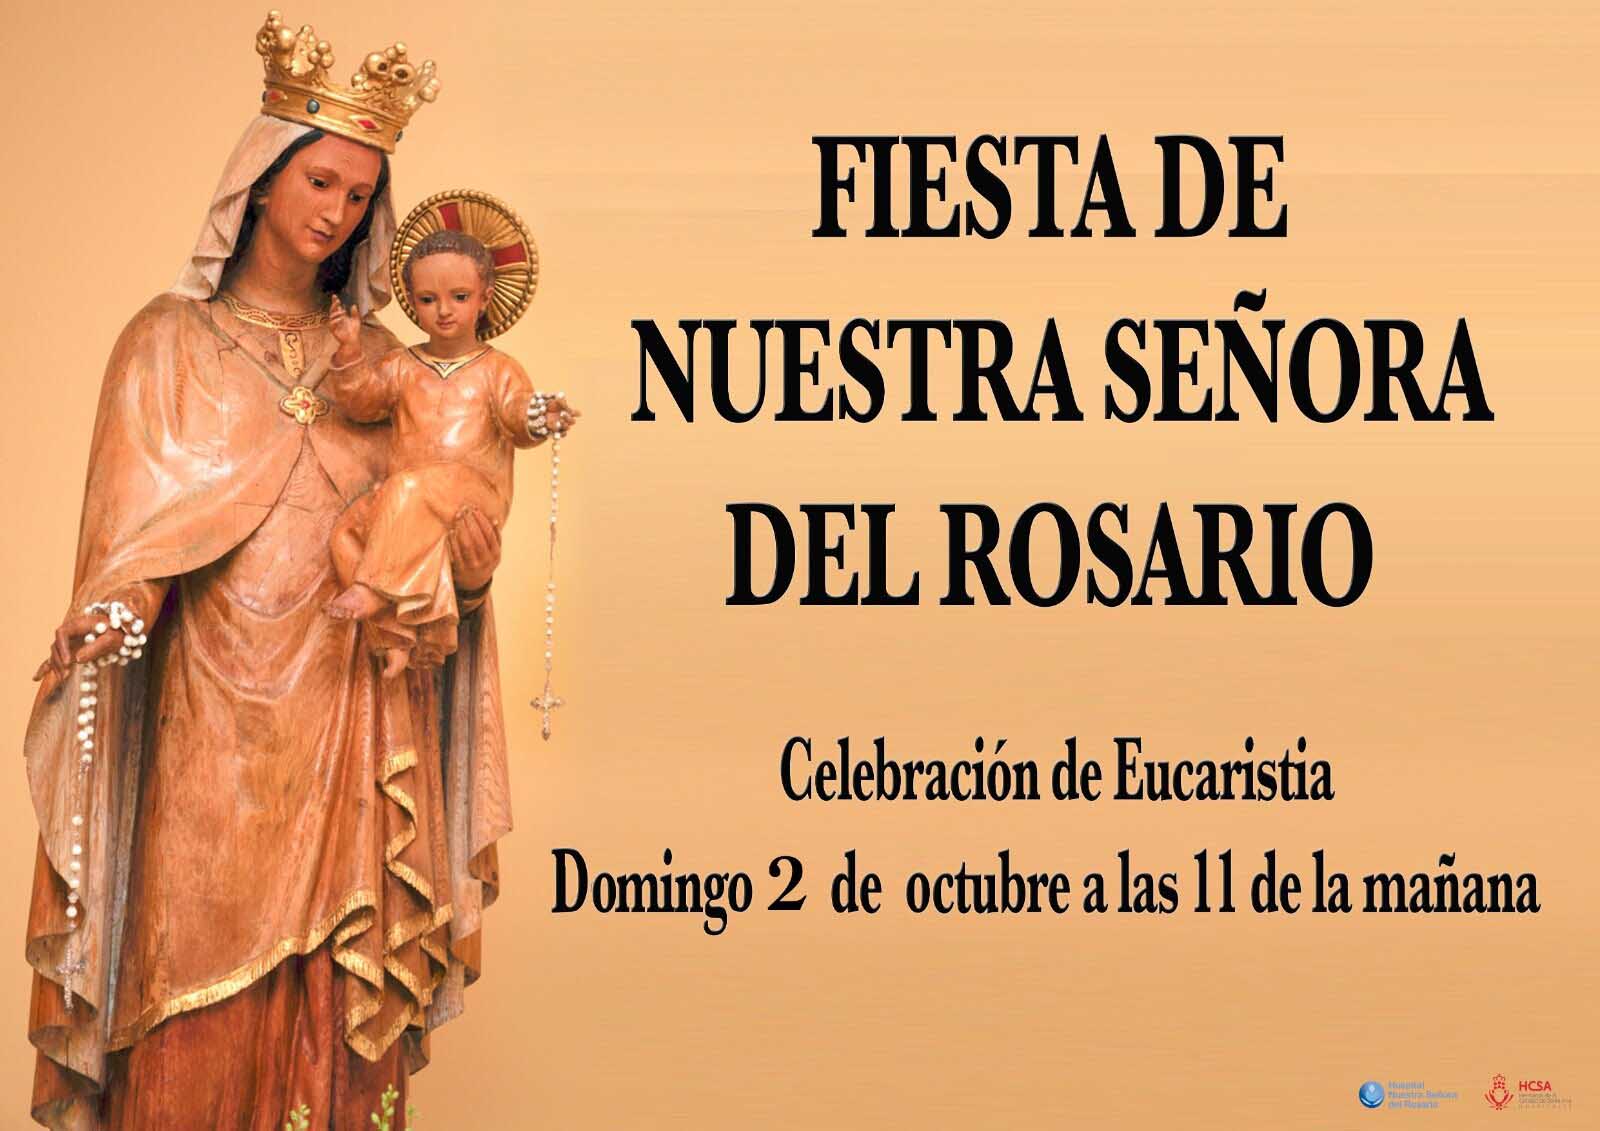 Fiesta Nuestra Señora del Rosario